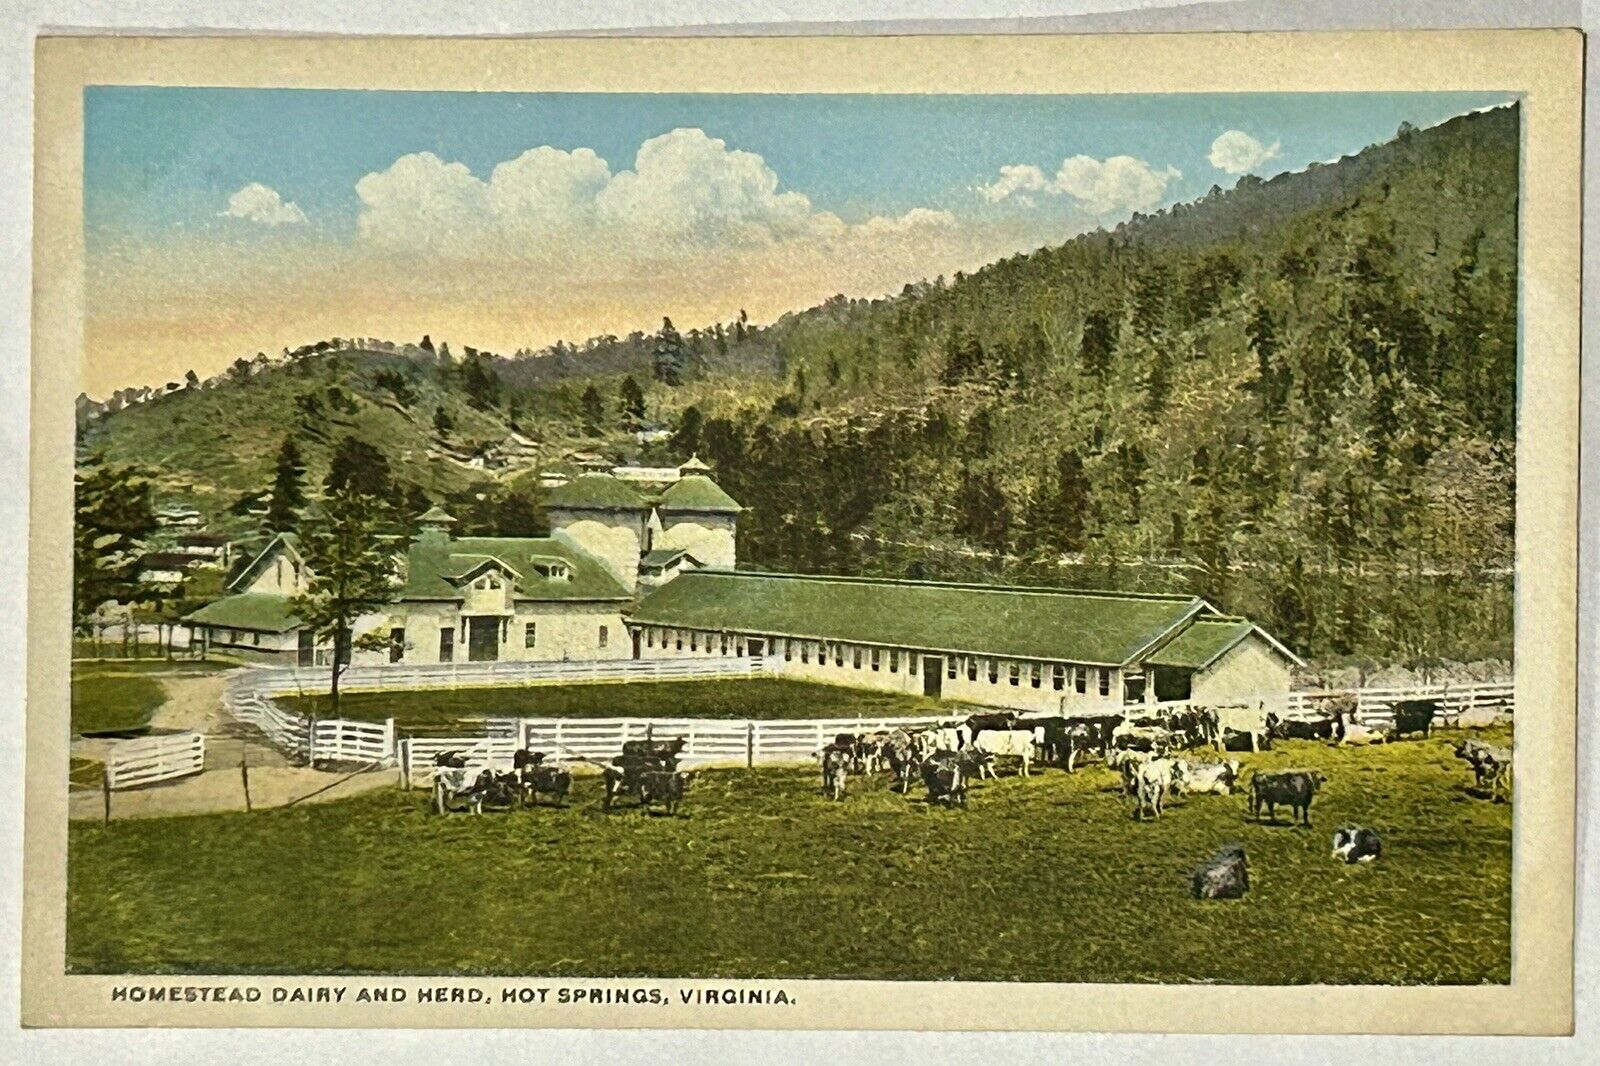 Homestead Dairy and Herd. Hot Springs, Virginia Postcard. VA